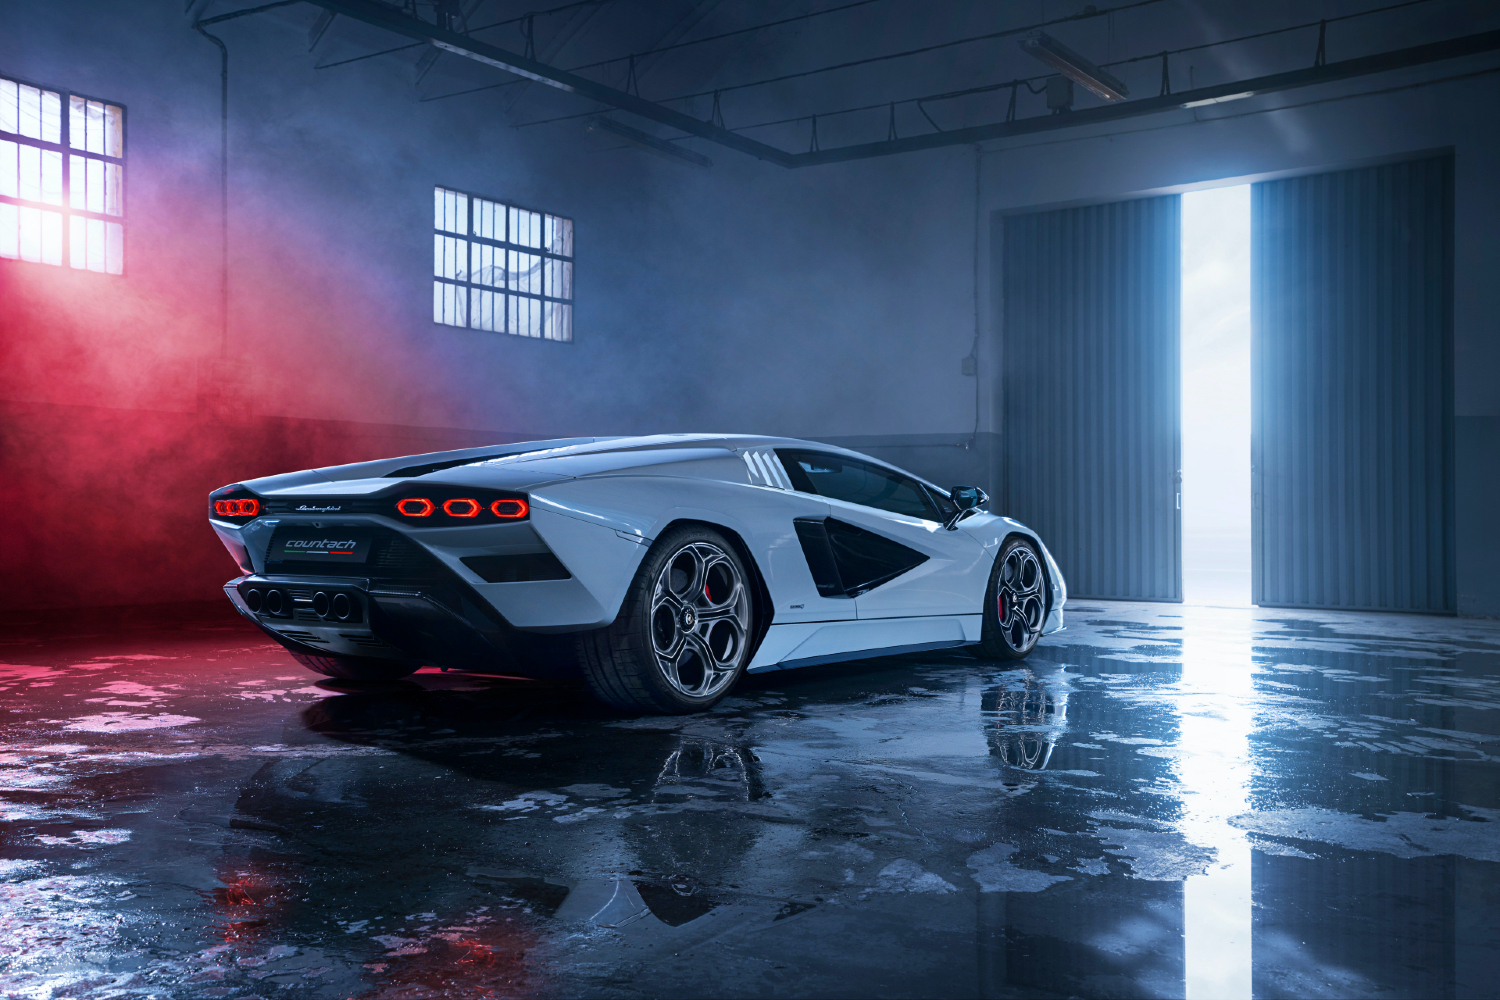 Lamborghini Countach Electrified là lựa chọn đầy phấn khích cho những người muốn khám phá sức mạnh của ô tô điện. Hình ảnh về chiếc xe này sẽ khiến bạn vô cùng tò mò và muốn tìm hiểu thêm về công nghệ sạc nhanh, khả năng đi xa và thiết kế tinh tế của nó.